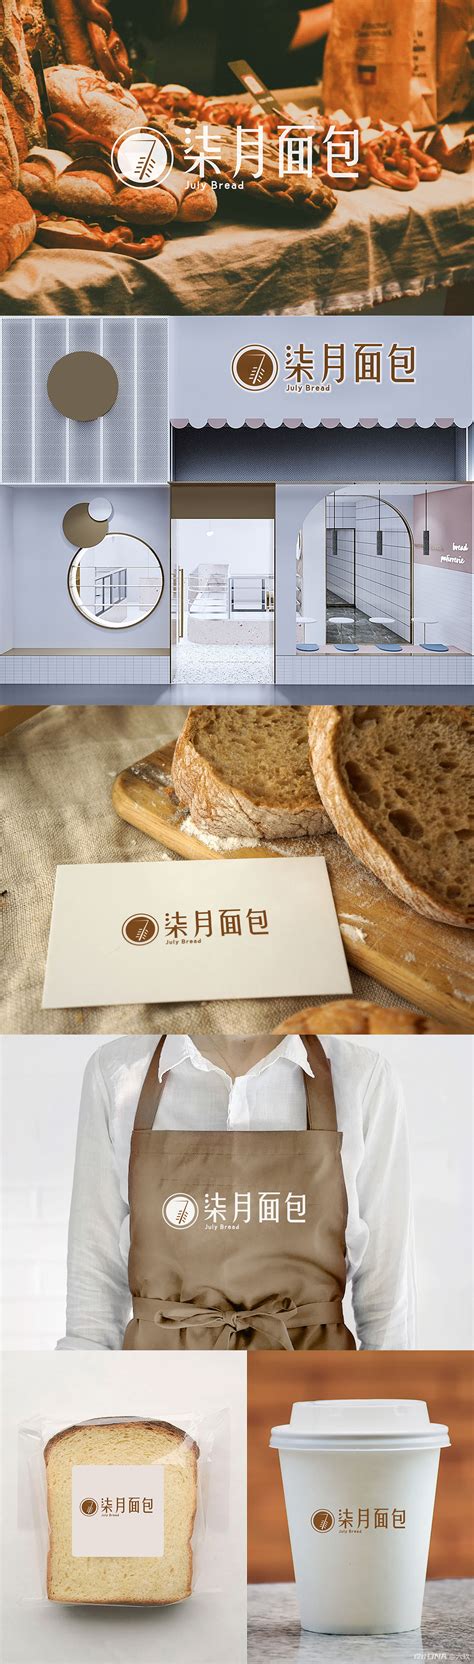 面包店标志设计LOGO设计作品-设计人才灵活用工-设计DNA